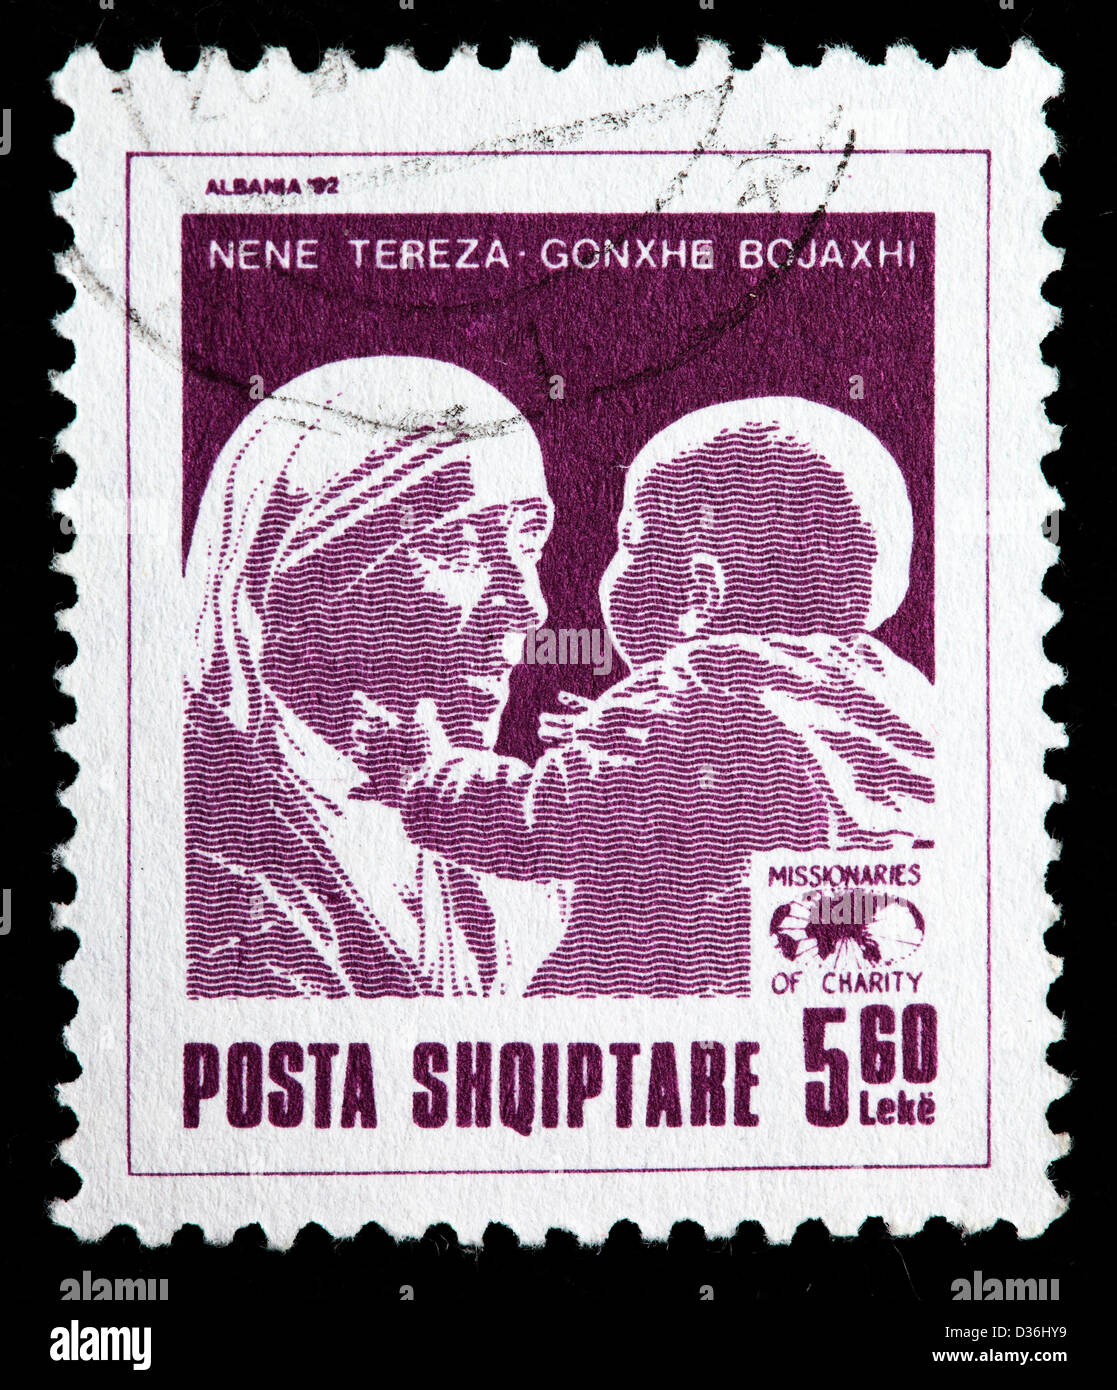 Mère Teresa et du nourrisson, timbre-poste, l'Albanie, 1992 Banque D'Images